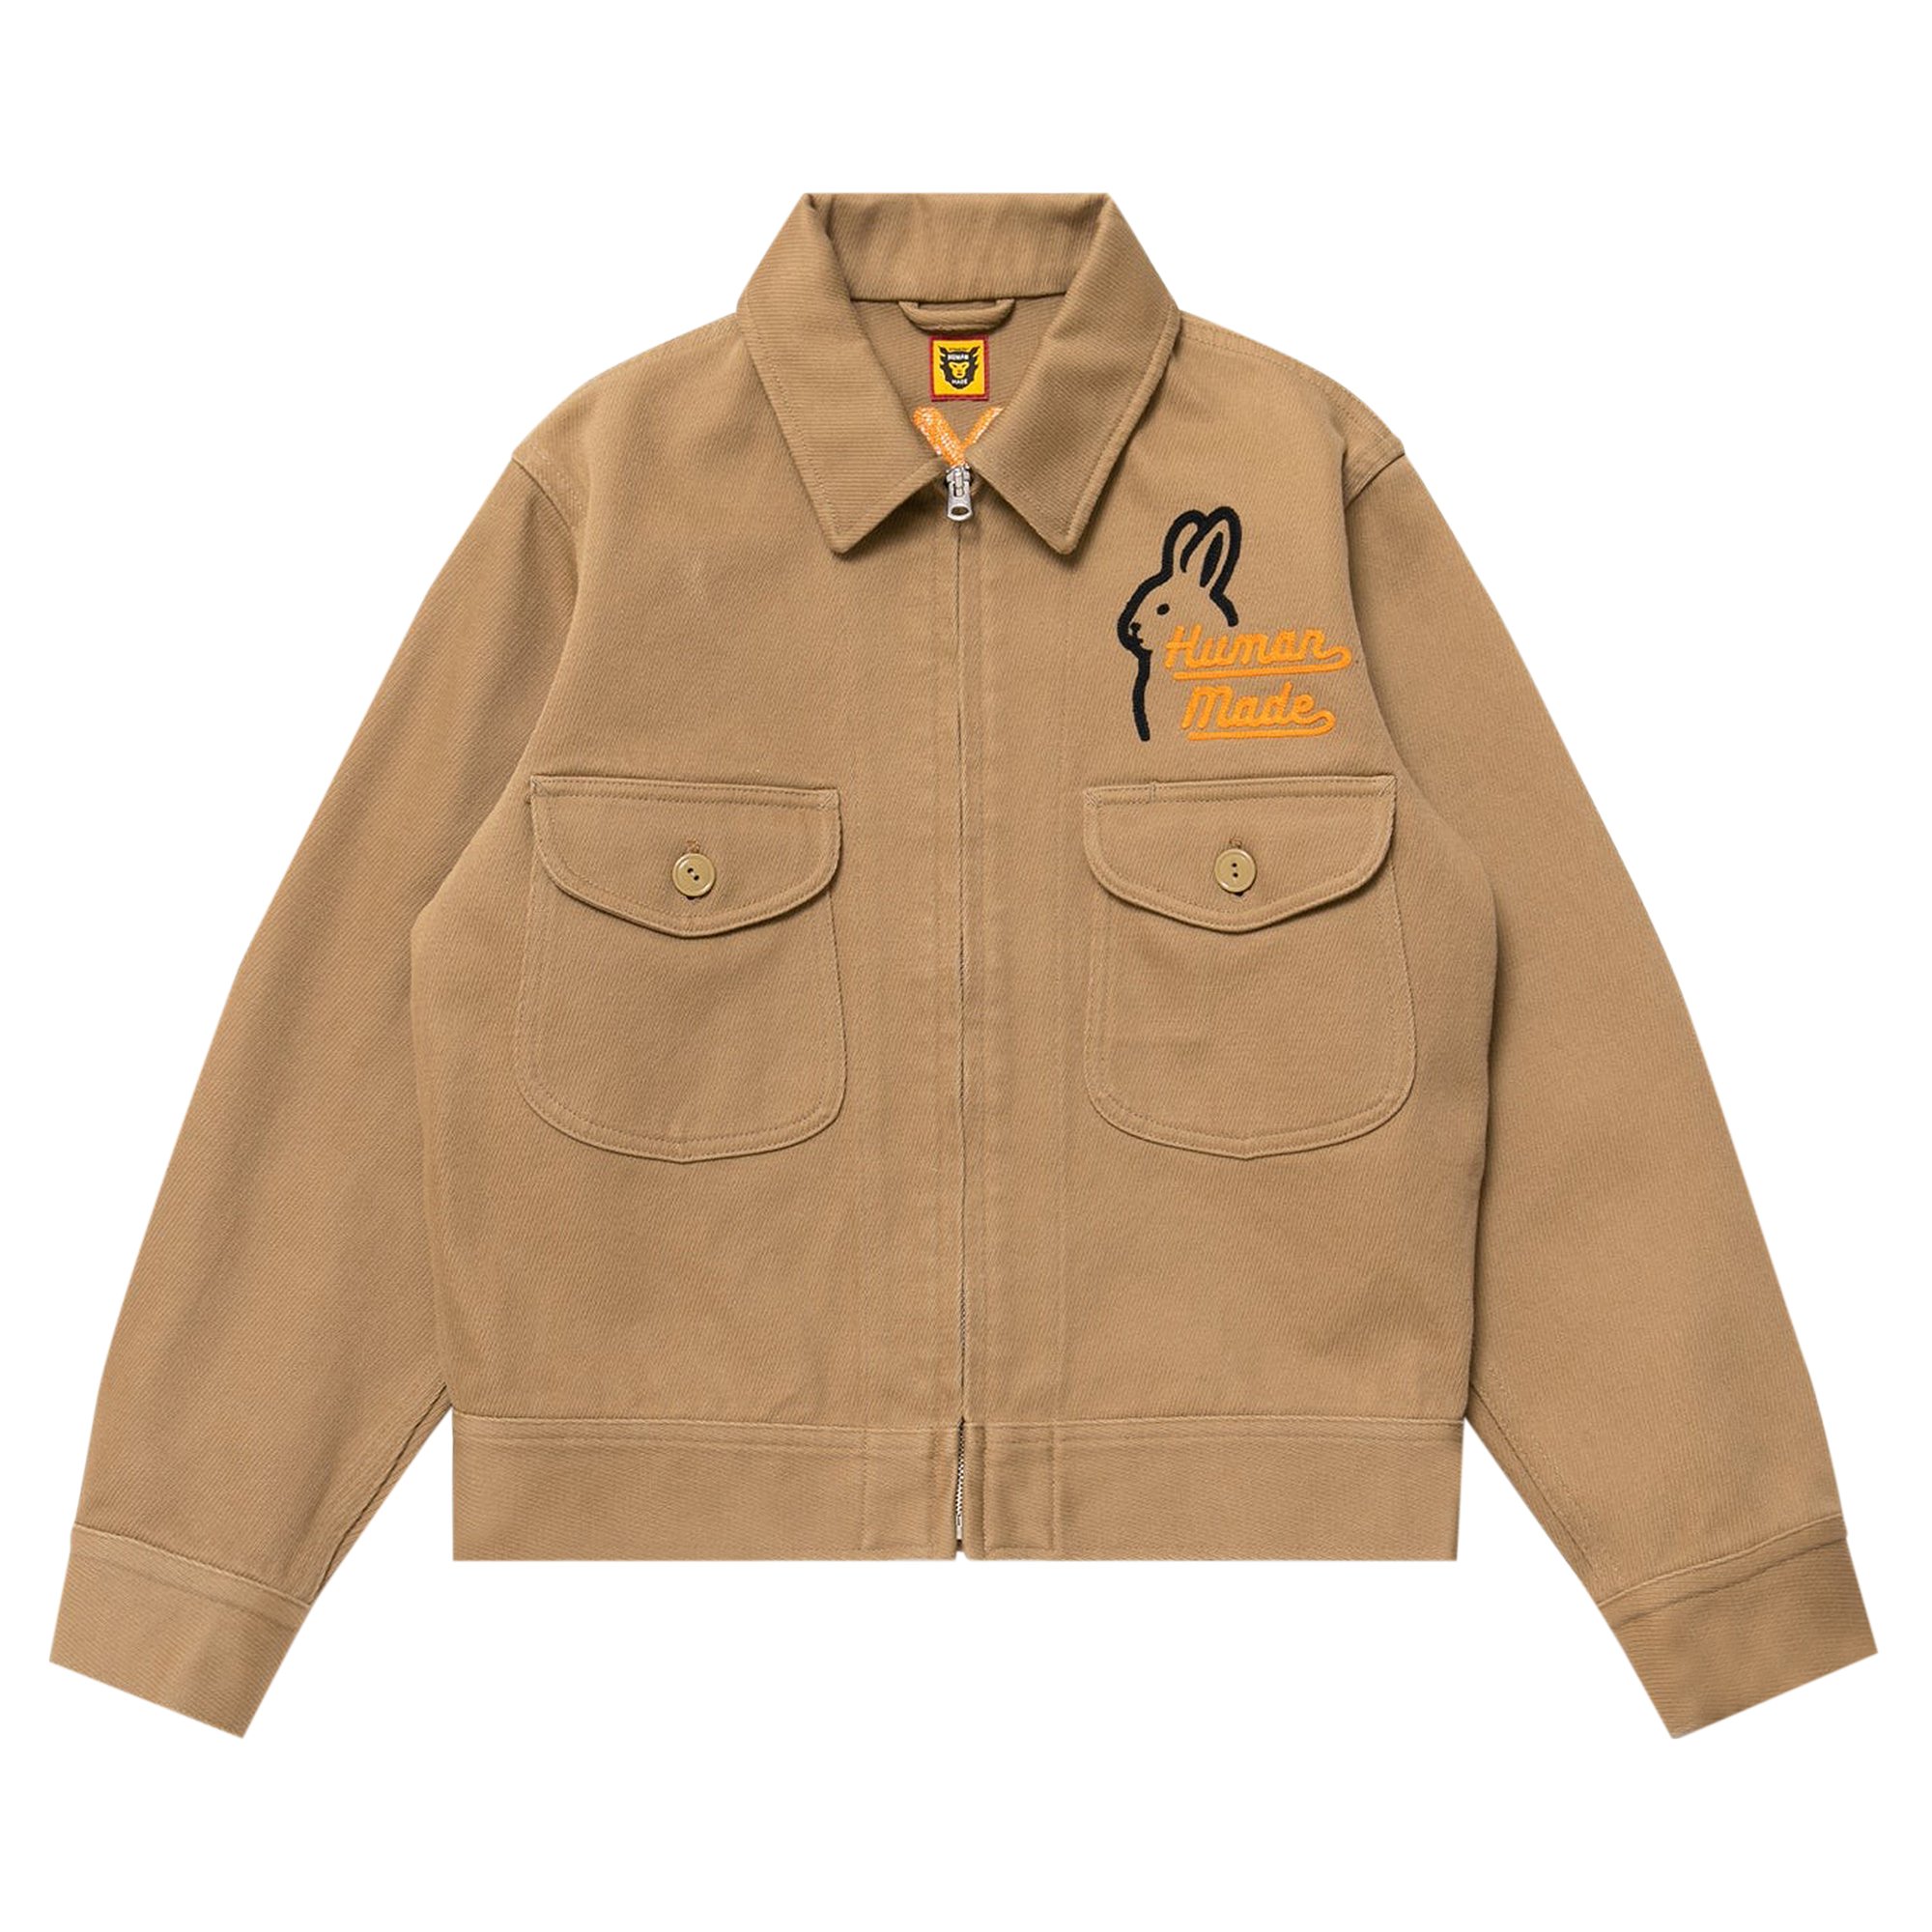 Buy Human Made Zip Work Jacket 'Beige' - HM24JK008 BEIG | GOAT